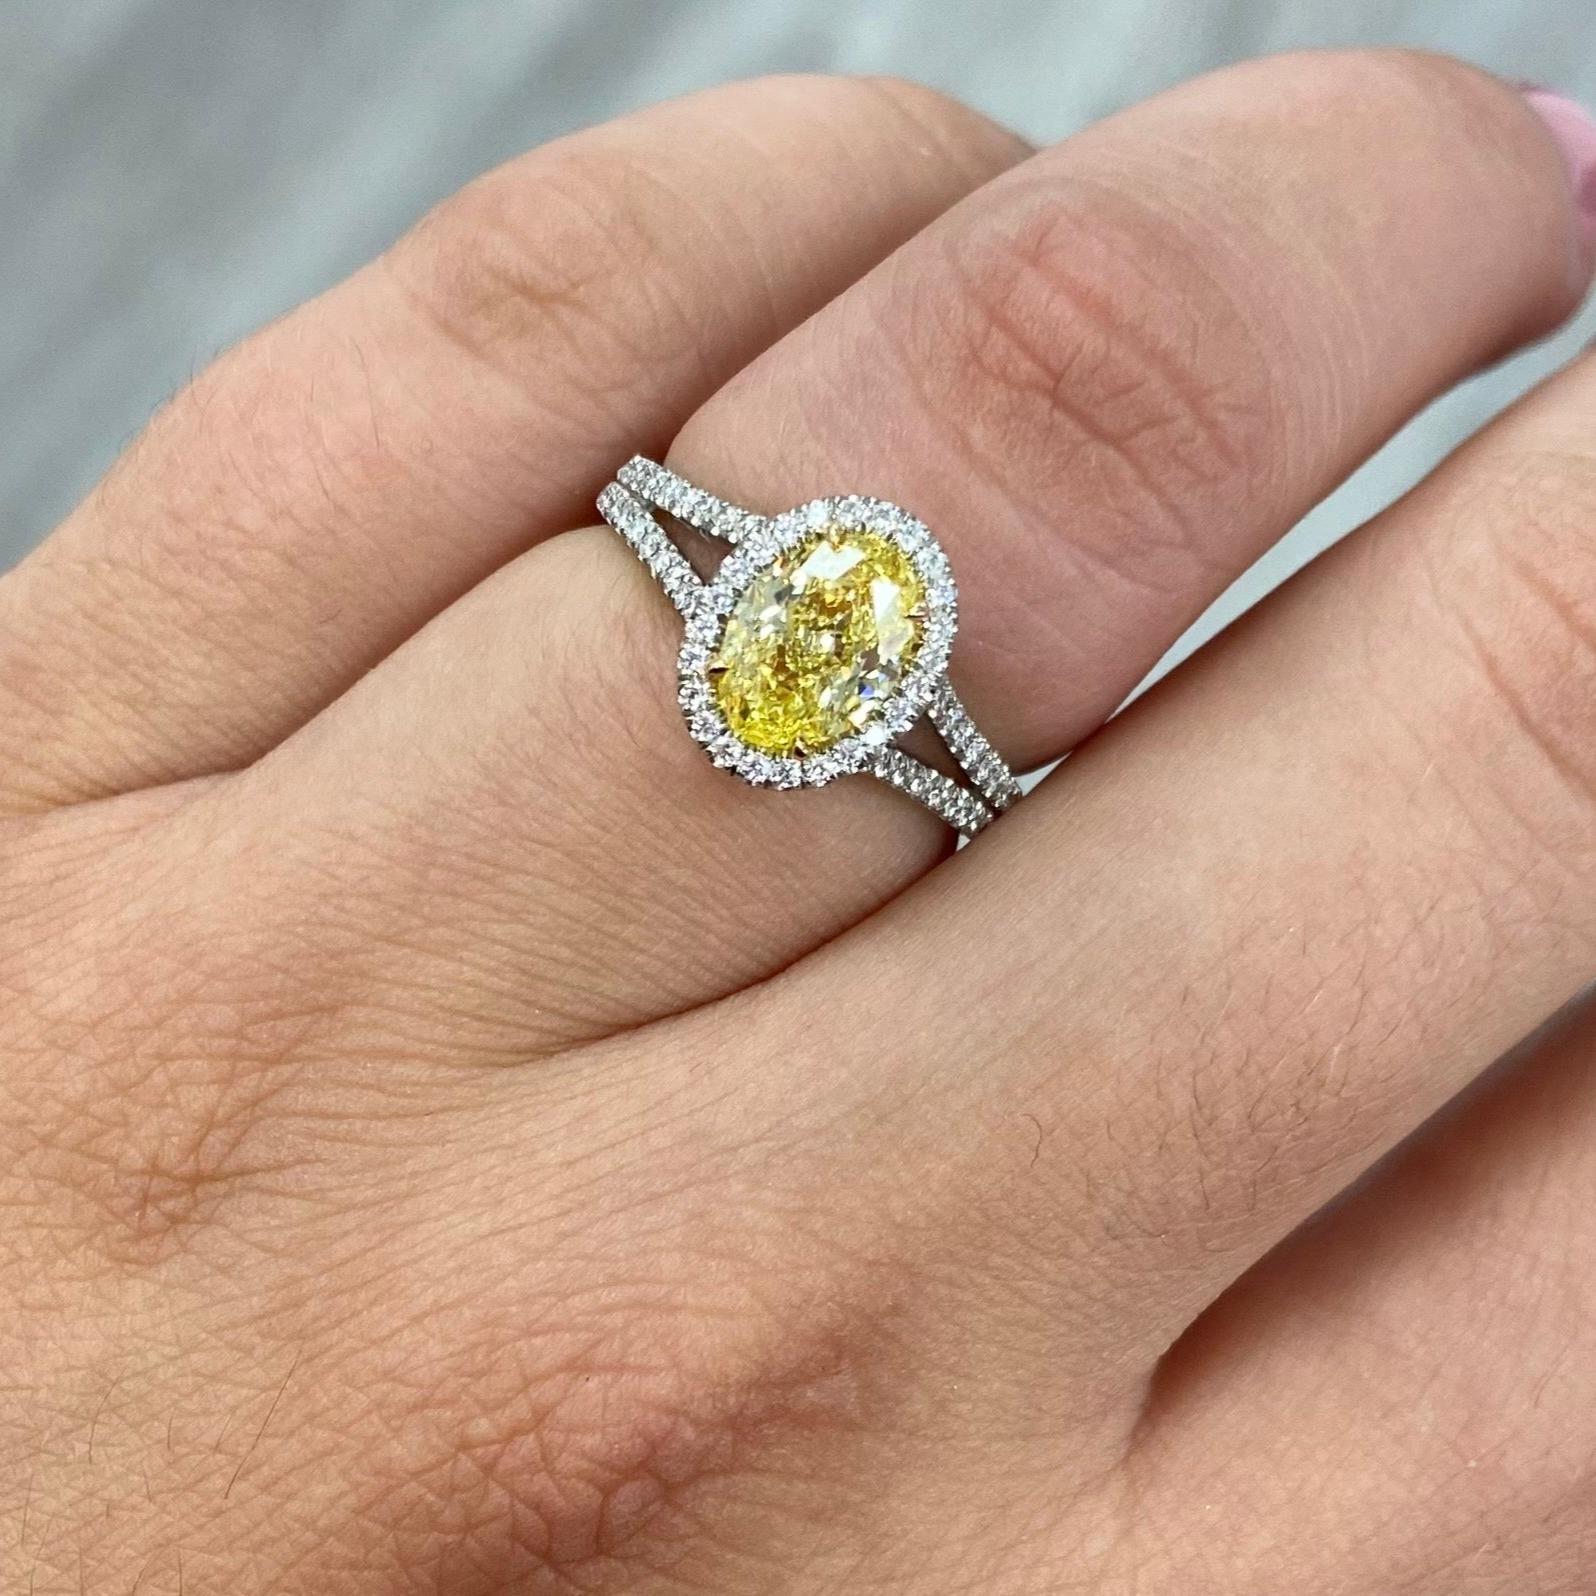 Bague élégante avec un ovale de couleur jaune intense dans un magnifique halo de l'anneau fendu.
1.47 Carat GIA Fancy Intense Yellow Oval 
SI1 Clarté 
Conçue avec un halo micro-pavé et une tige fendue. 
Entouré de 0,36 carats de diamants blancs
Fait